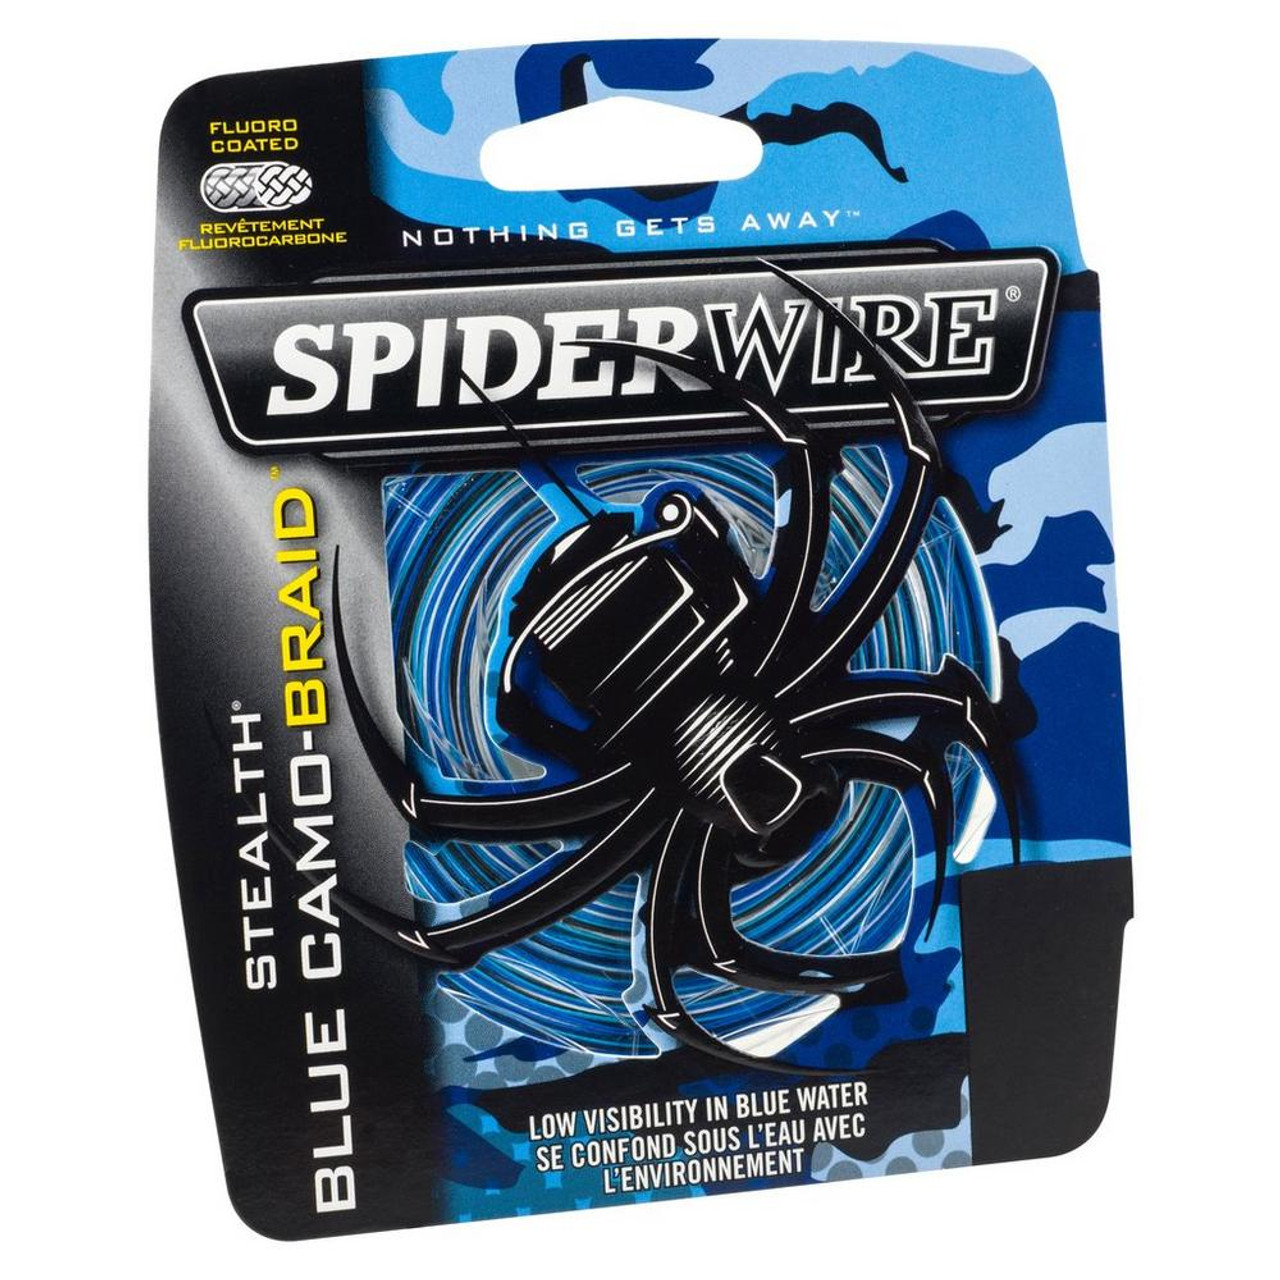 Spiderwire Stealth Blue Camo 1500yd 30lb